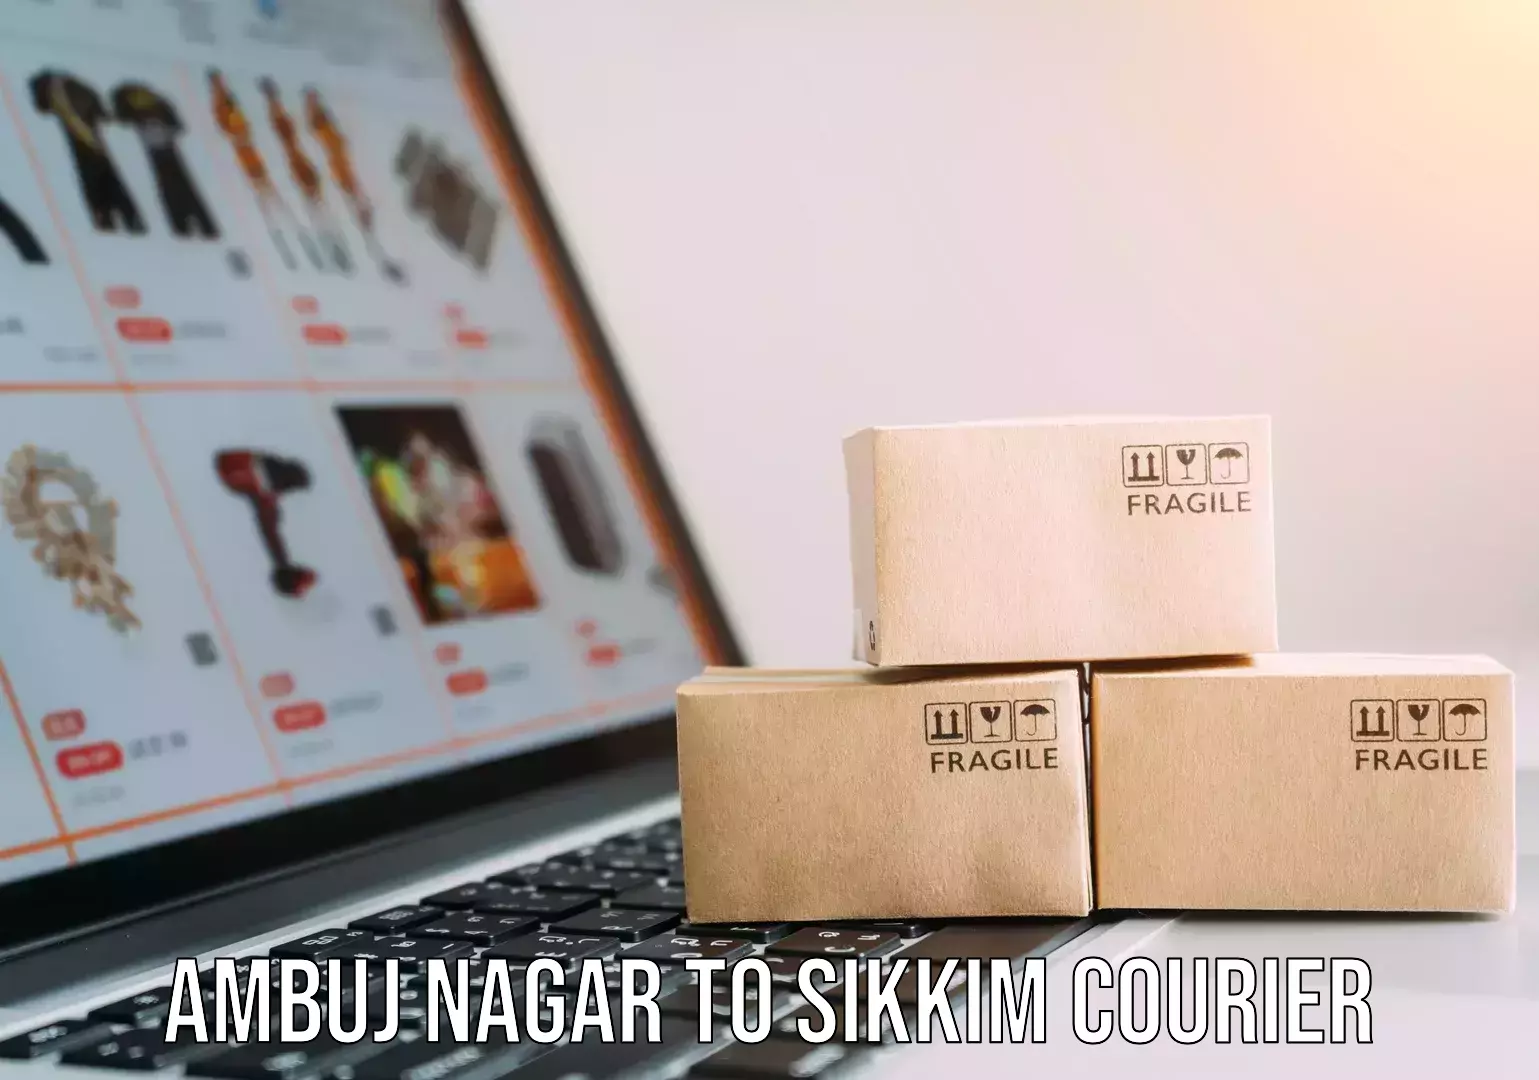 Online courier booking Ambuj Nagar to Sikkim